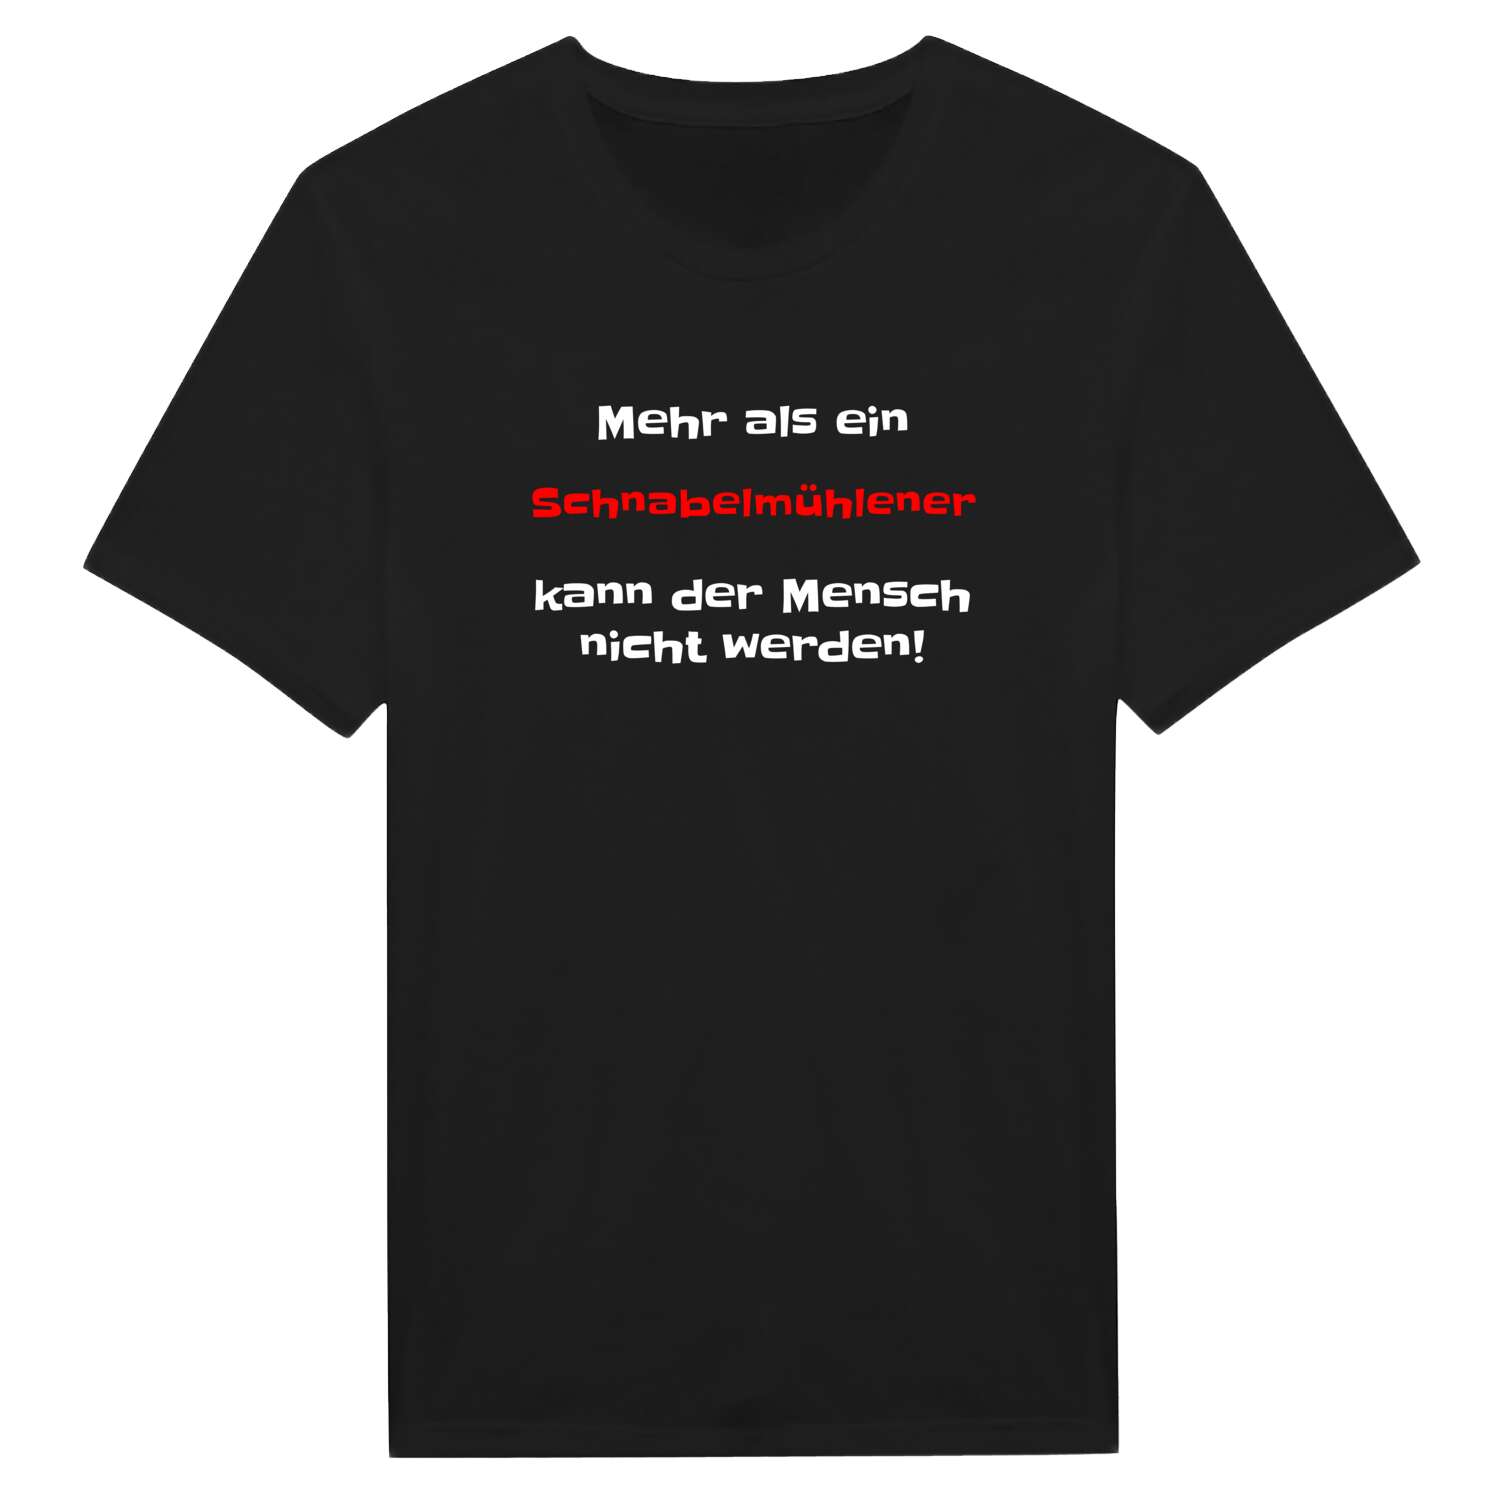 Schnabelmühle T-Shirt »Mehr als ein«